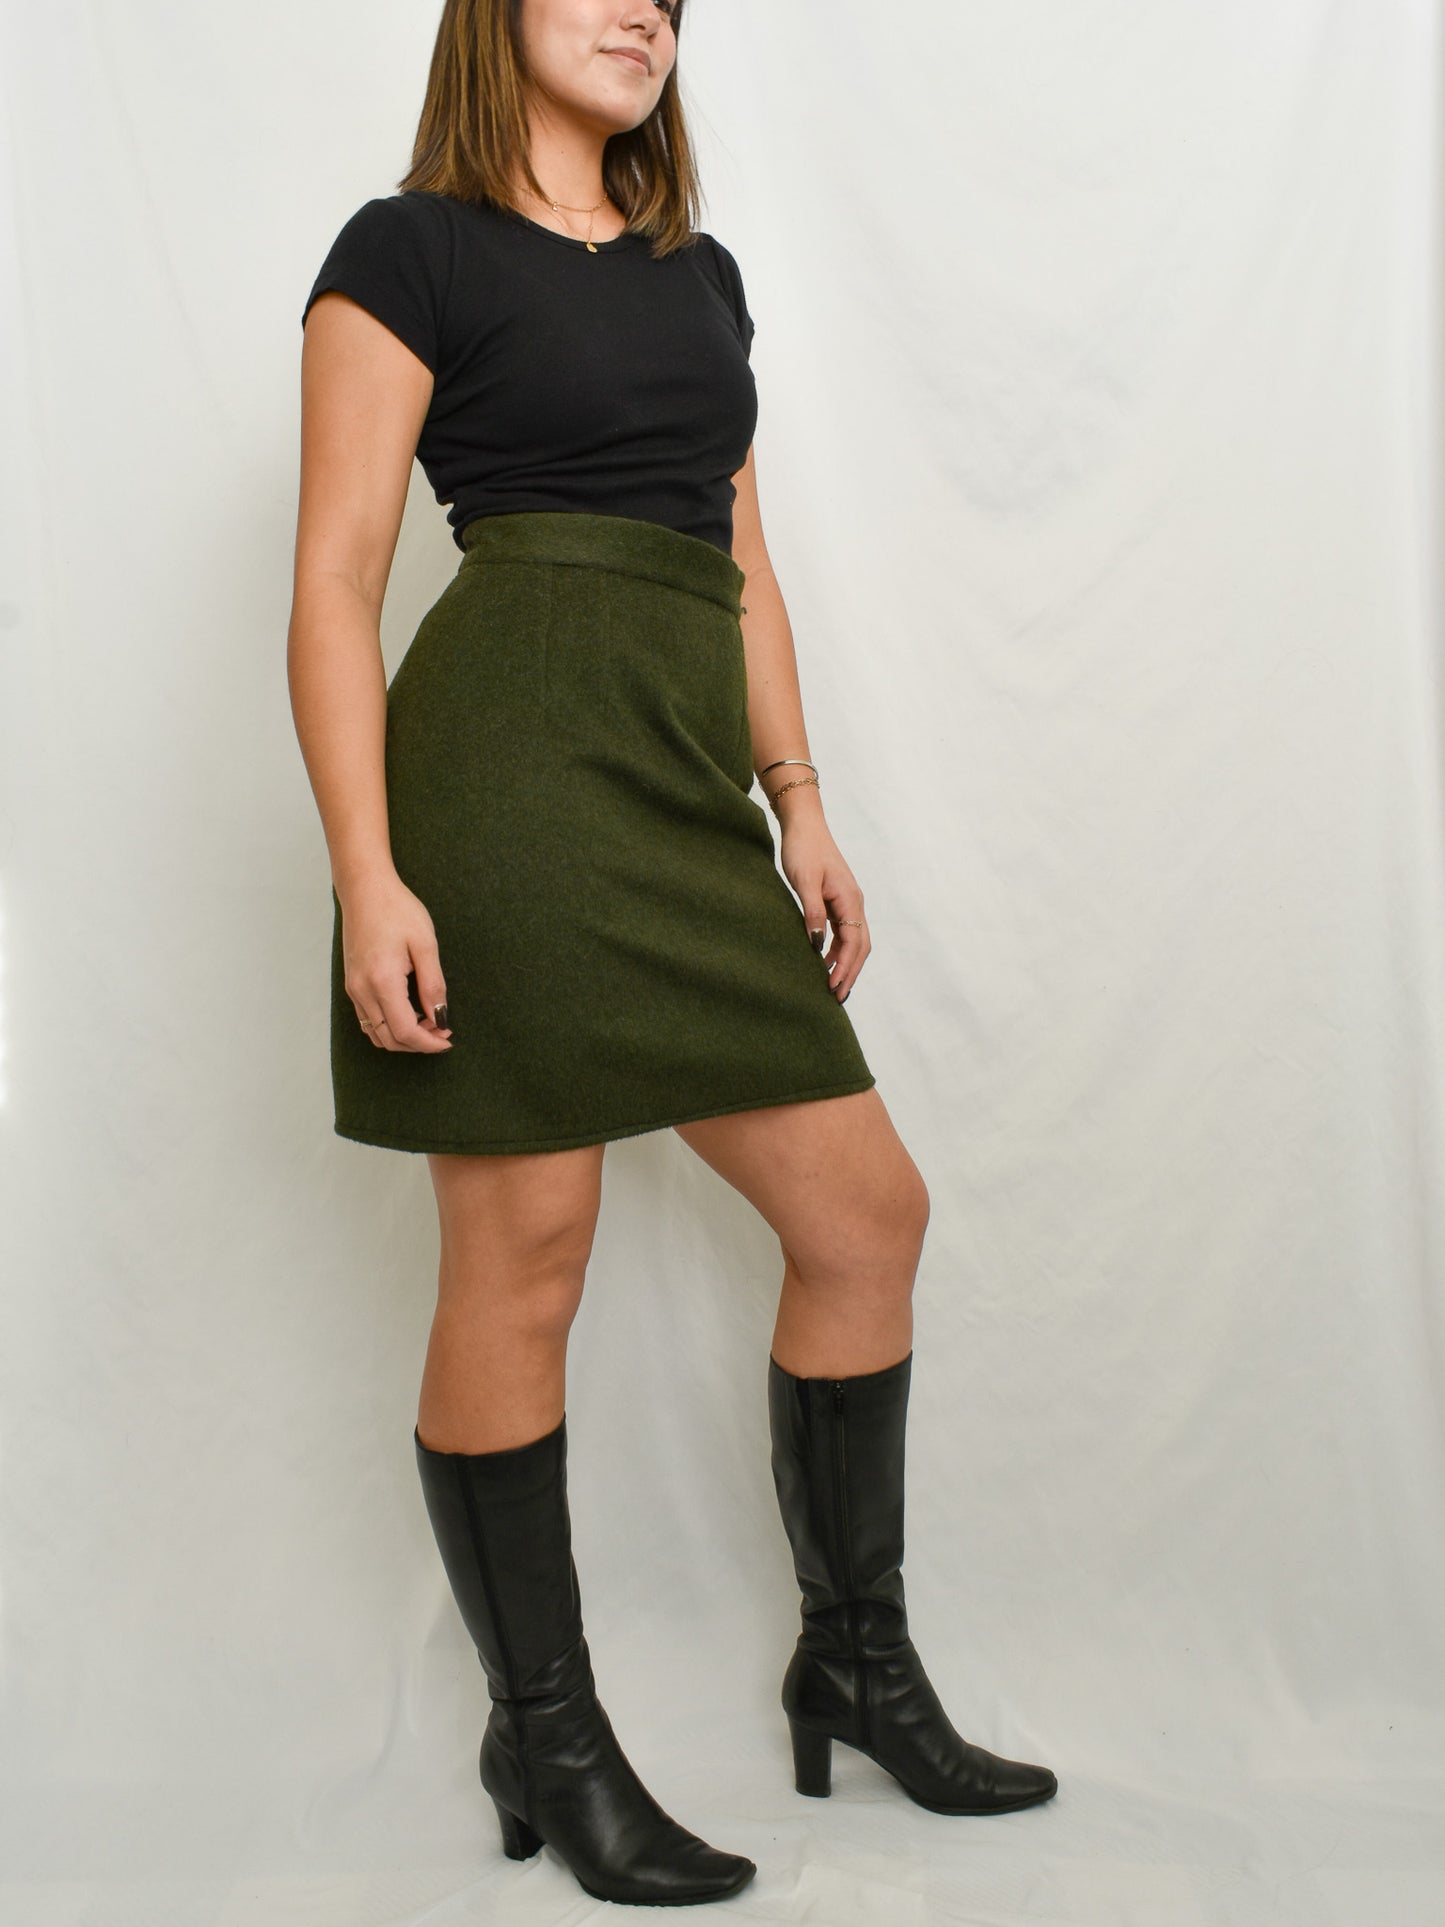 Green Skirt (M)